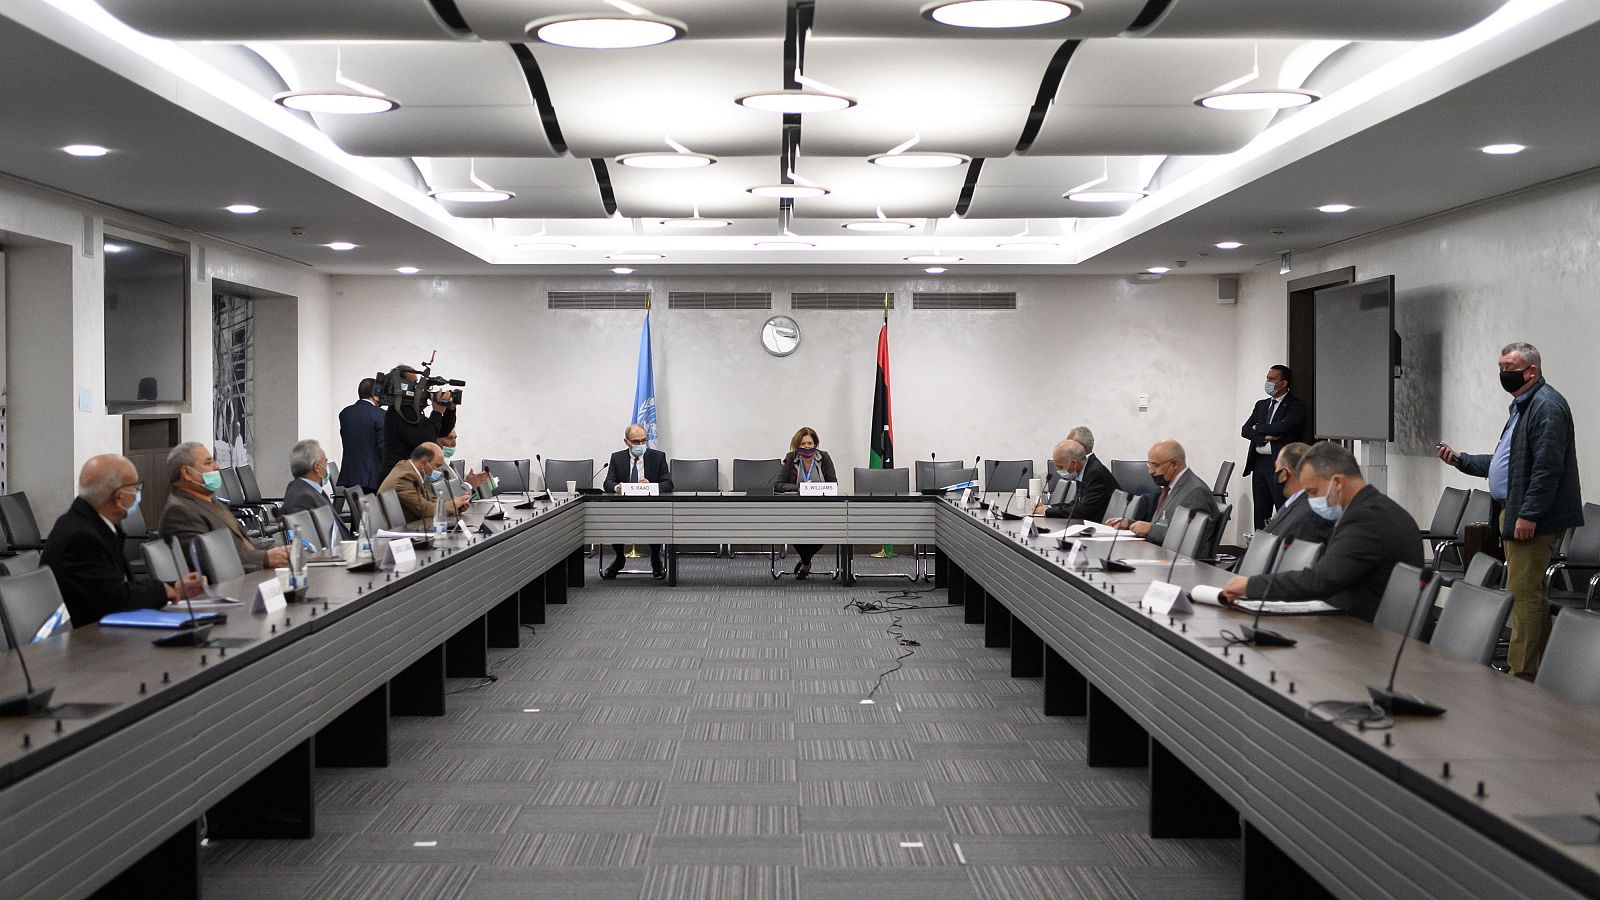 Vista general durante las conversaciones entre las facciones rivales en el conflicto de Libia el 20 de octubre de 2020 en las oficinas de las Naciones Unidas en Ginebra.